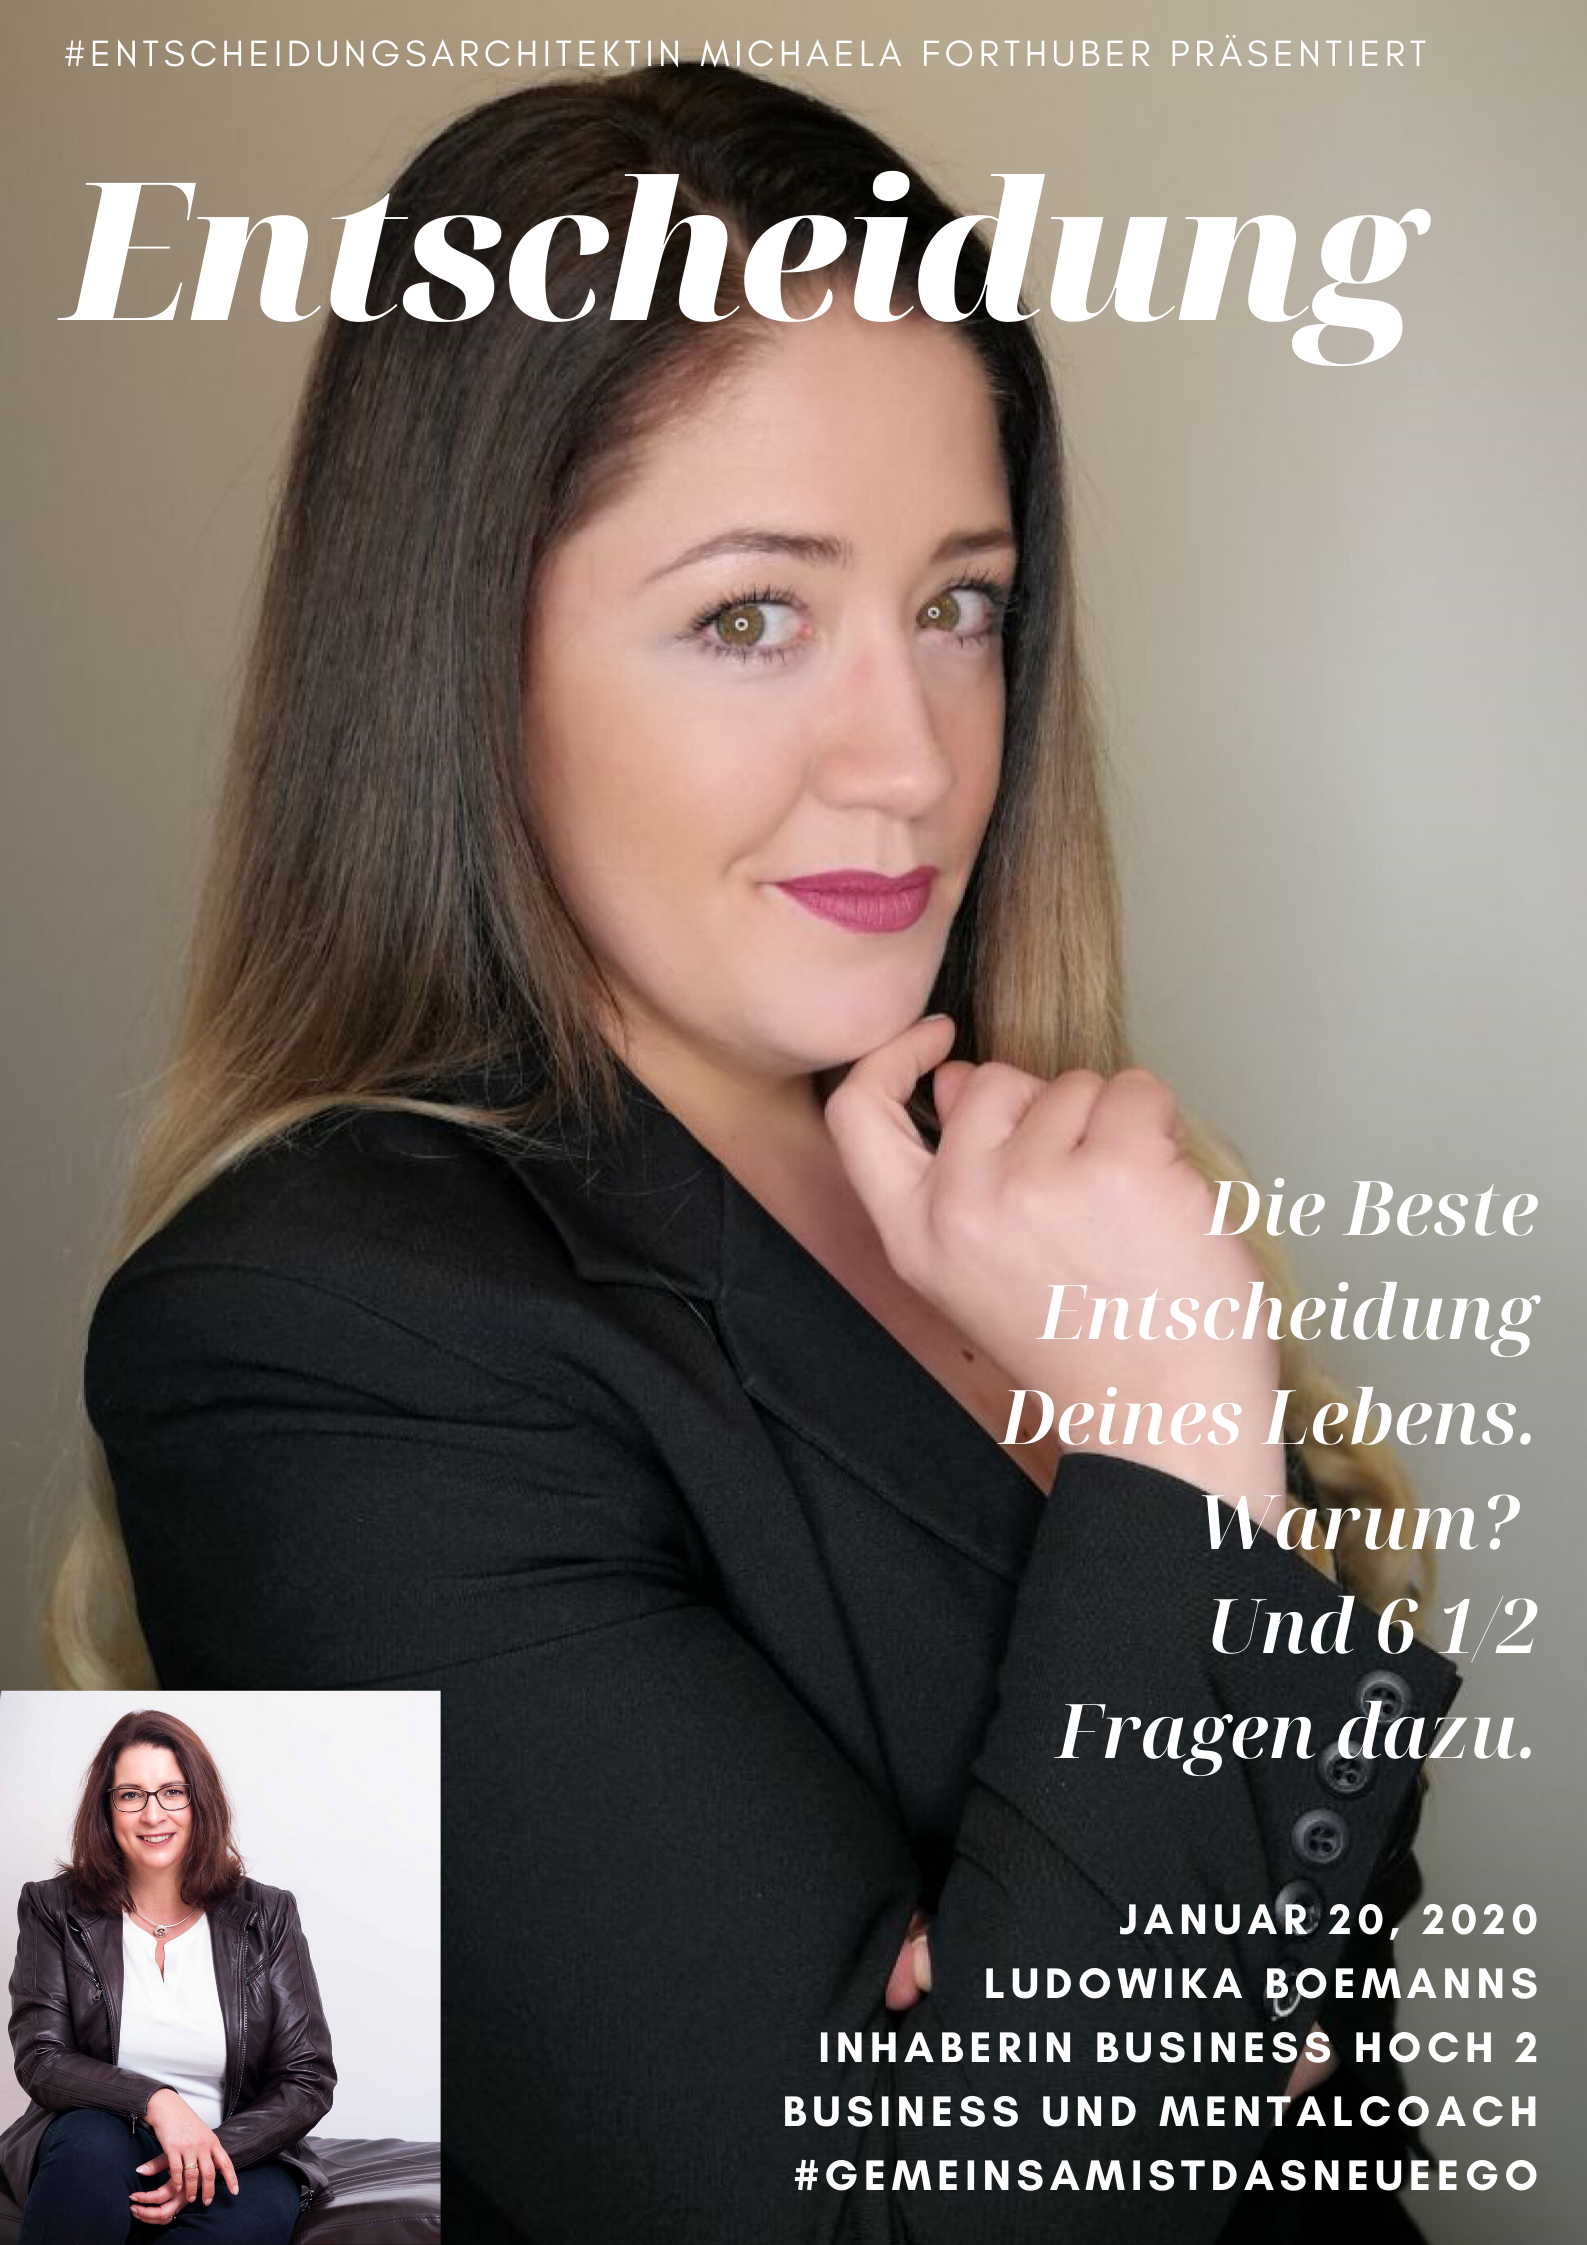 Blog Interview Entscheiden Cover Michaela Forthuber mit Ludowika Boemanns #Entscheidungsarchitektin